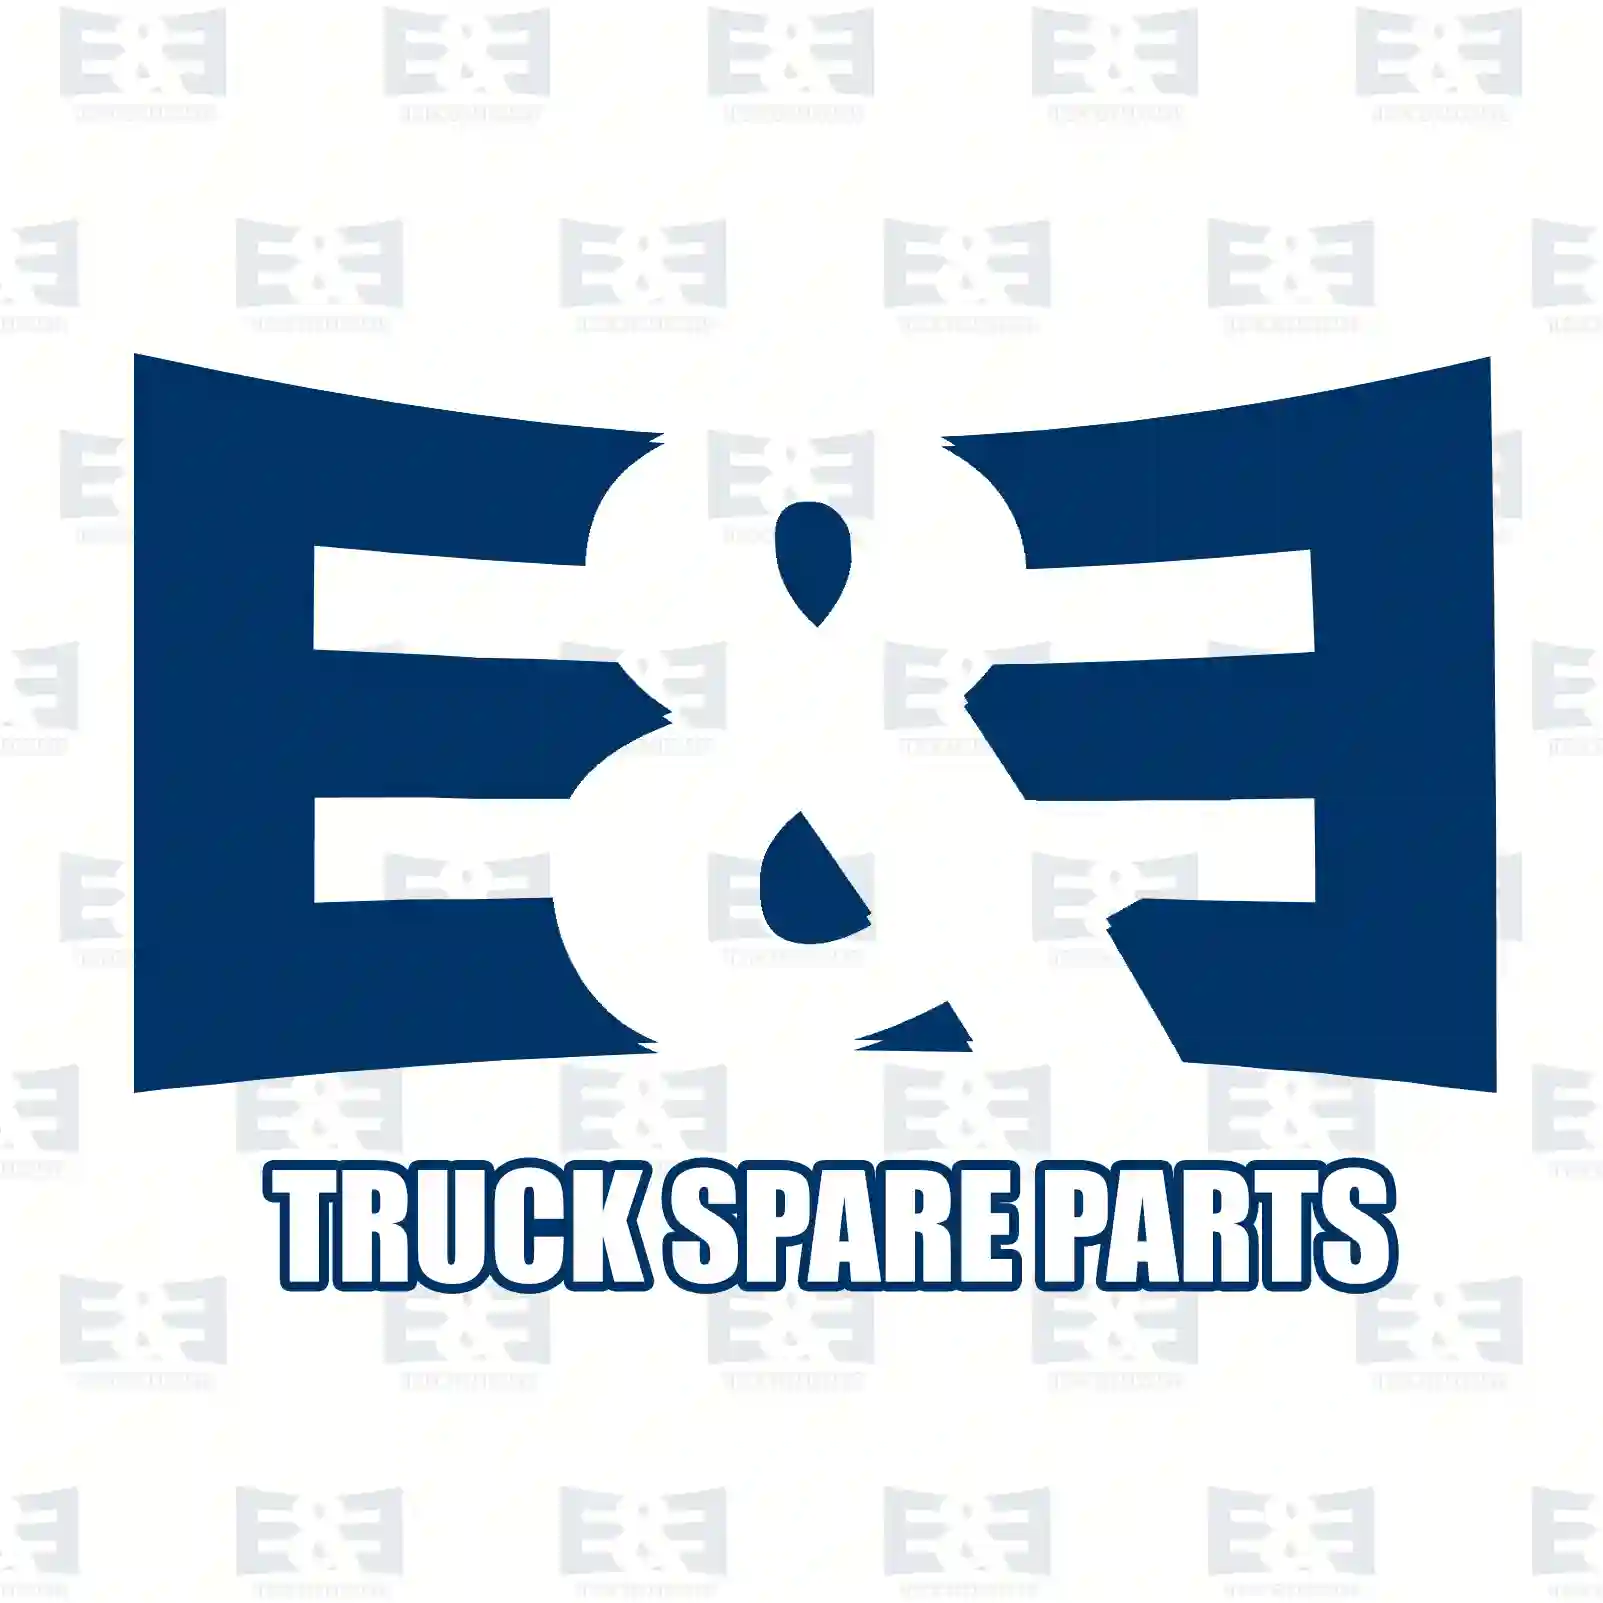 Resistor group, 2E2290639, 81259070278, 2V5959263 ||  2E2290639 E&E Truck Spare Parts | Truck Spare Parts, Auotomotive Spare Parts Resistor group, 2E2290639, 81259070278, 2V5959263 ||  2E2290639 E&E Truck Spare Parts | Truck Spare Parts, Auotomotive Spare Parts